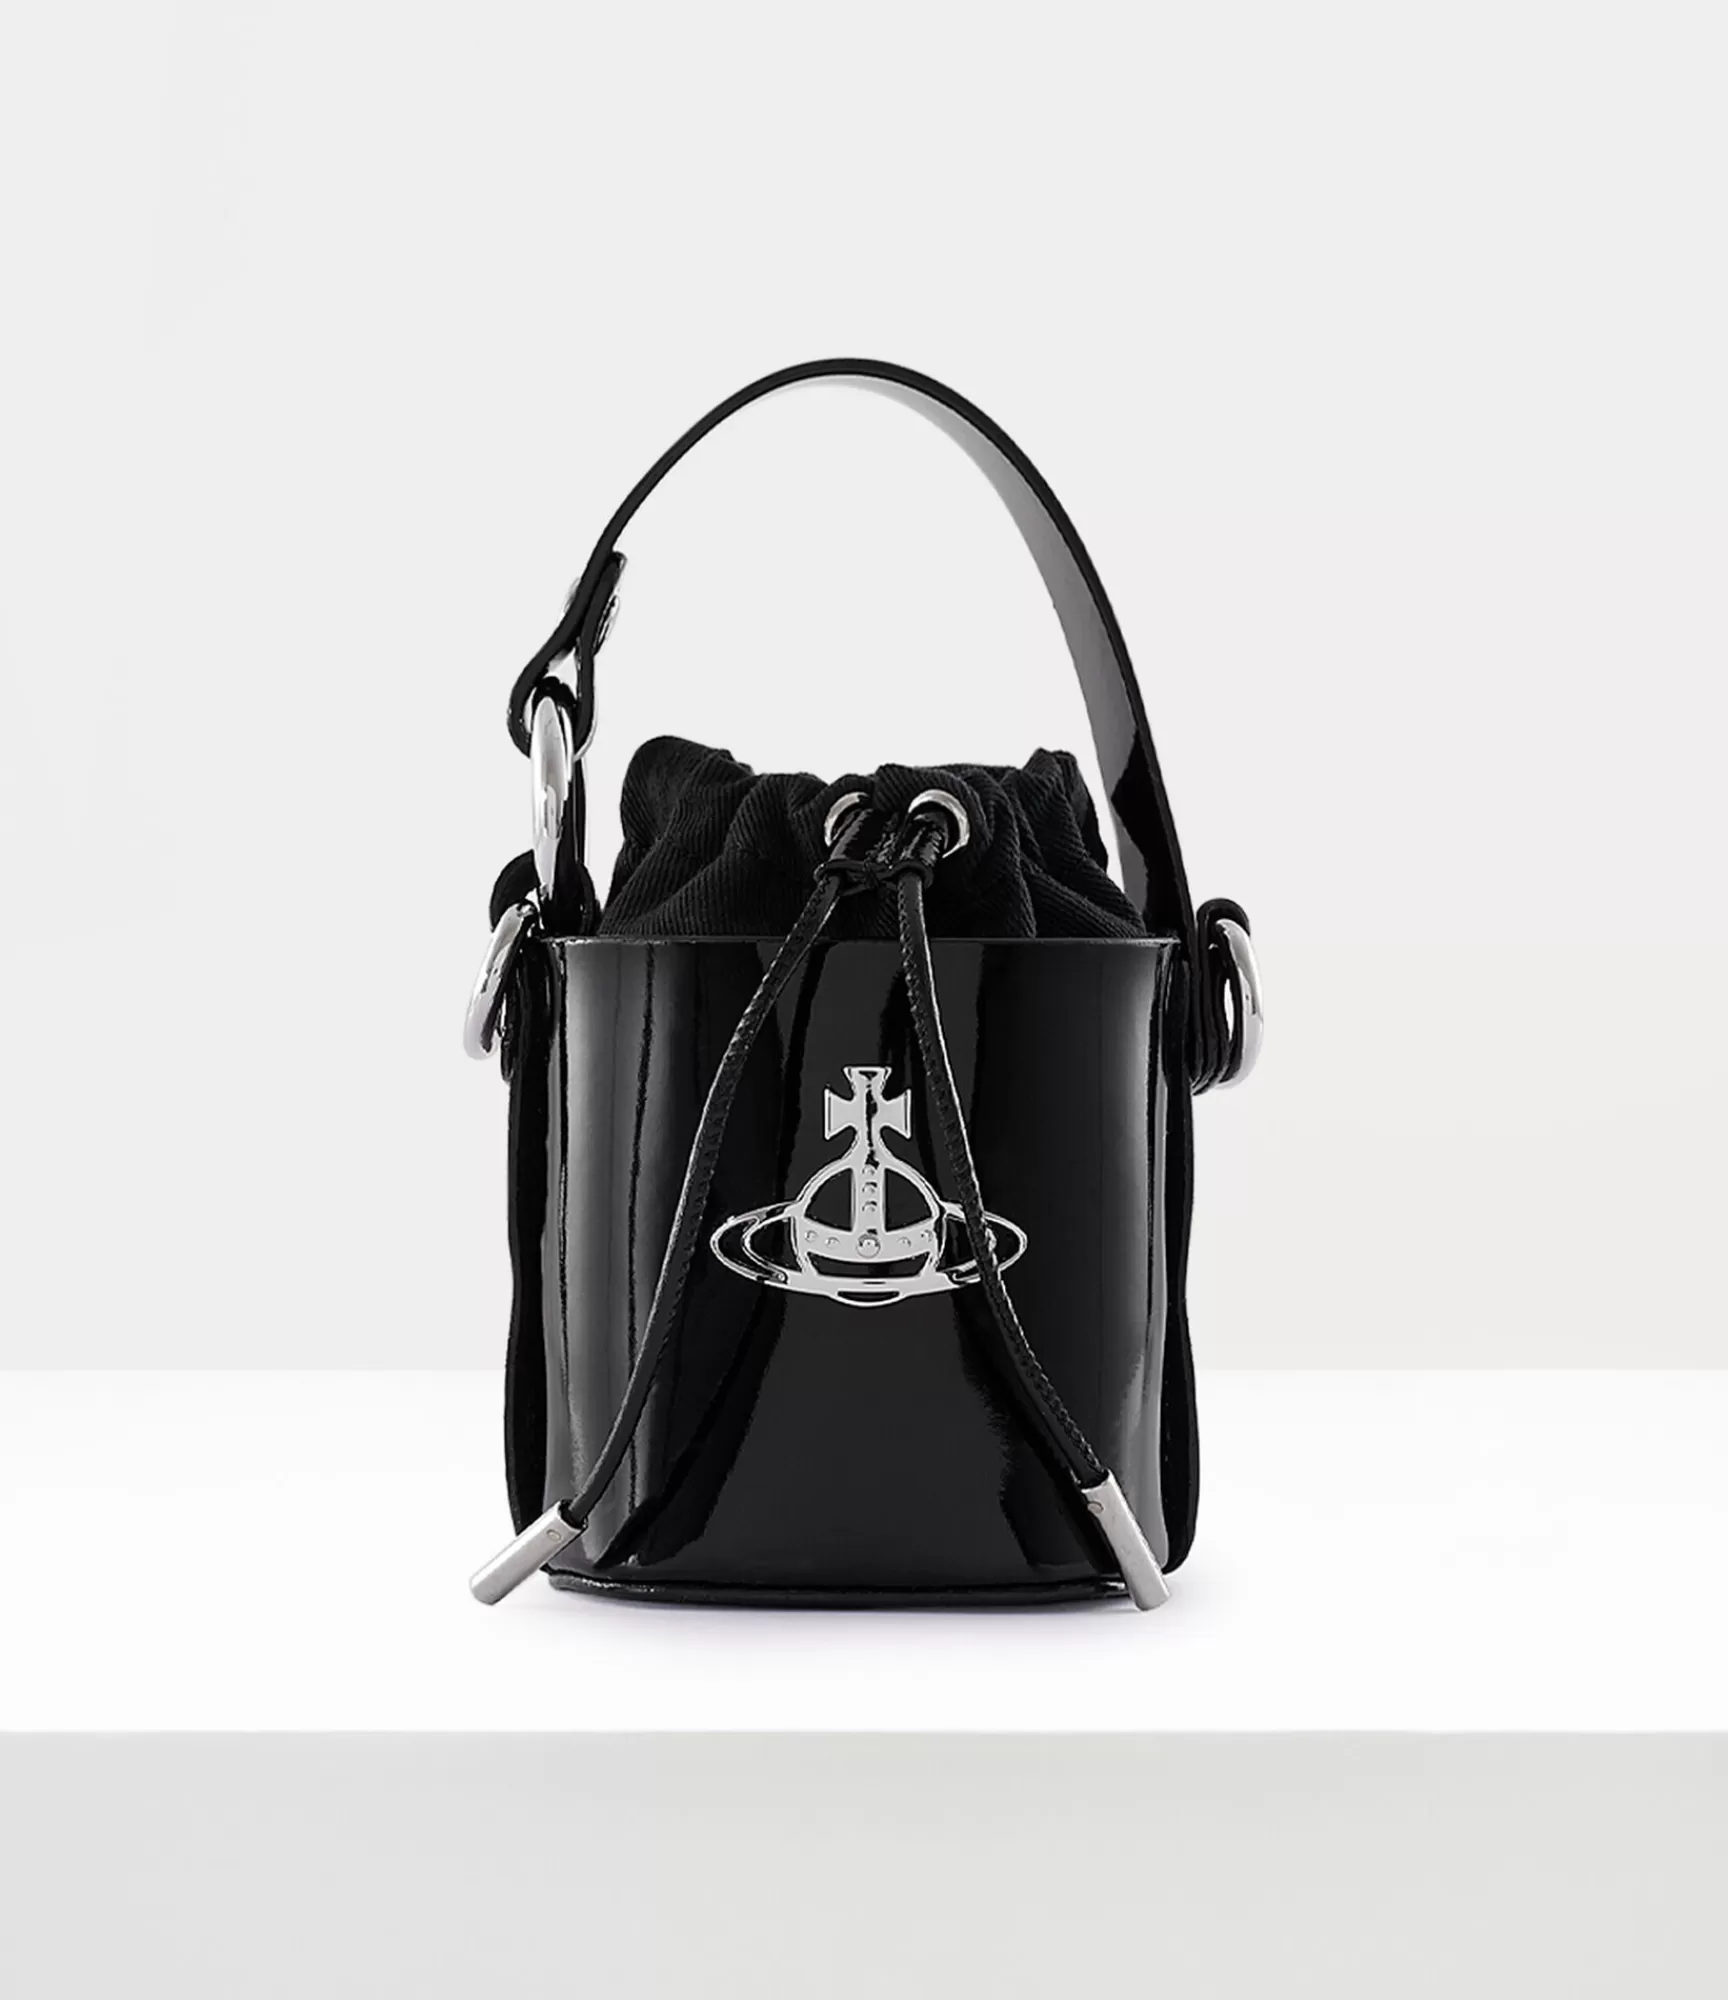 Vivienne Westwood Handbags*Bucket bag Black